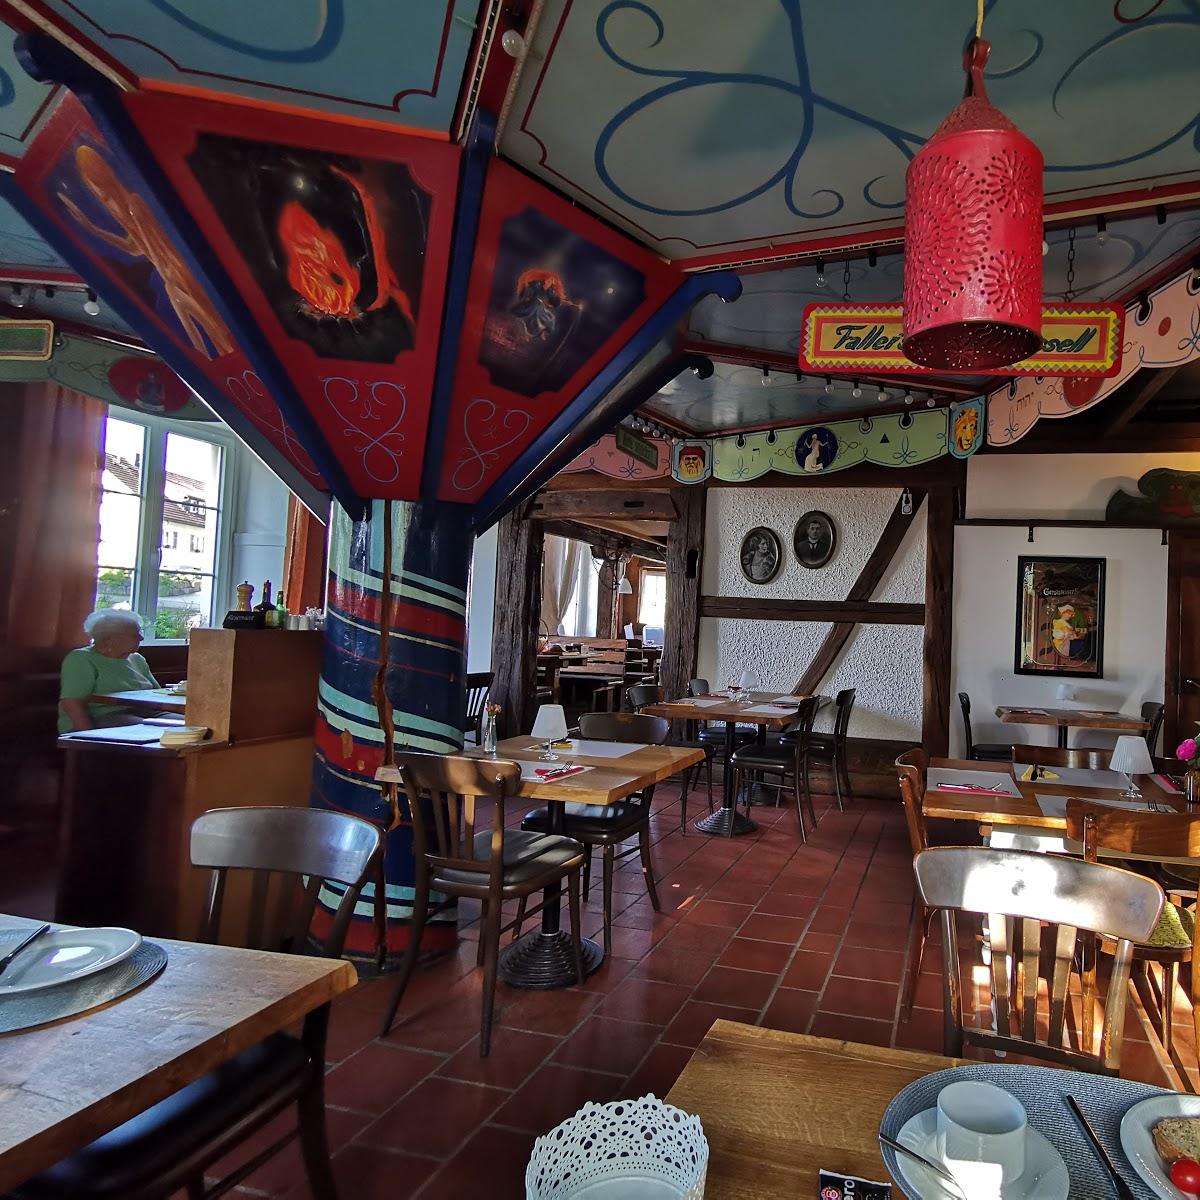 Restaurant "Cafe-Verkehrt" in Murg